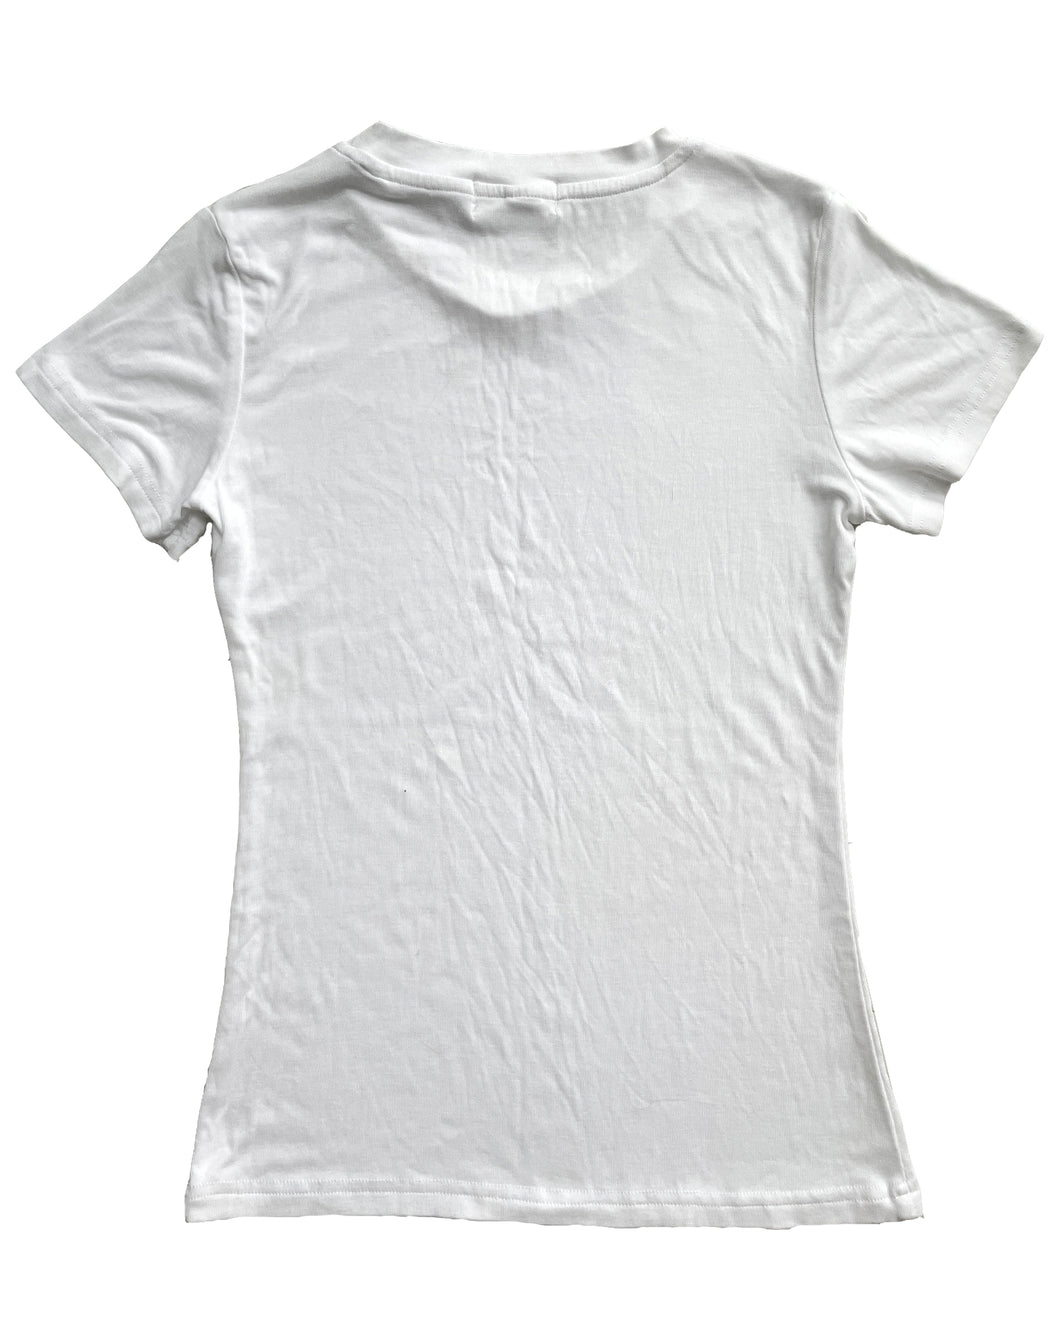 Plozimic women Undershirts - Soft Breathable Crew Neck T-Shirt